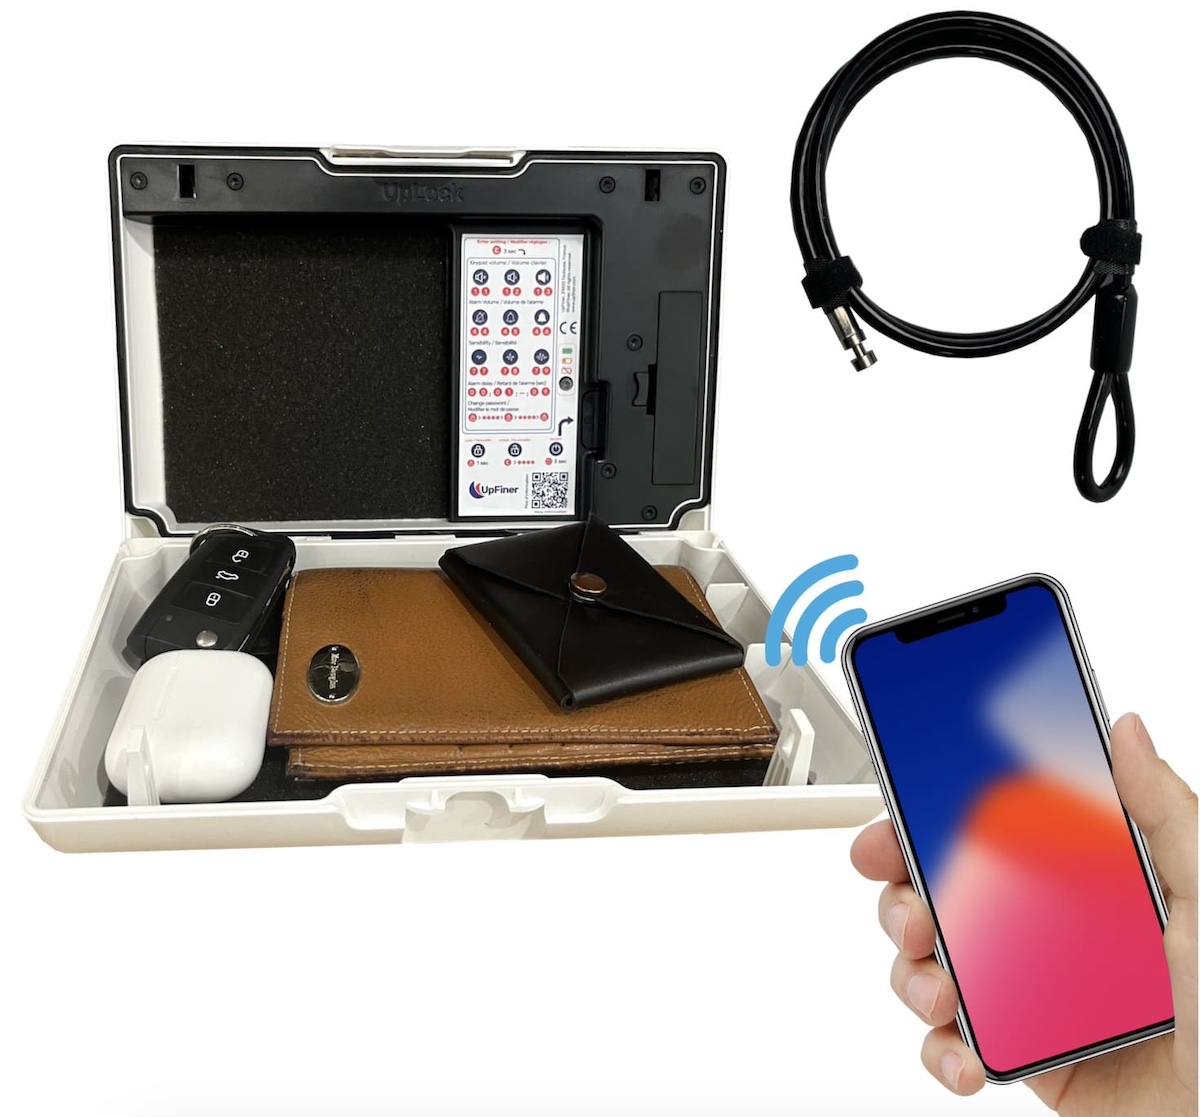 έξυπνο φορητό χρηματοκιβώτιο UpLock μίνι χρηματοκιβώτιο για κινητά τιμαλφή